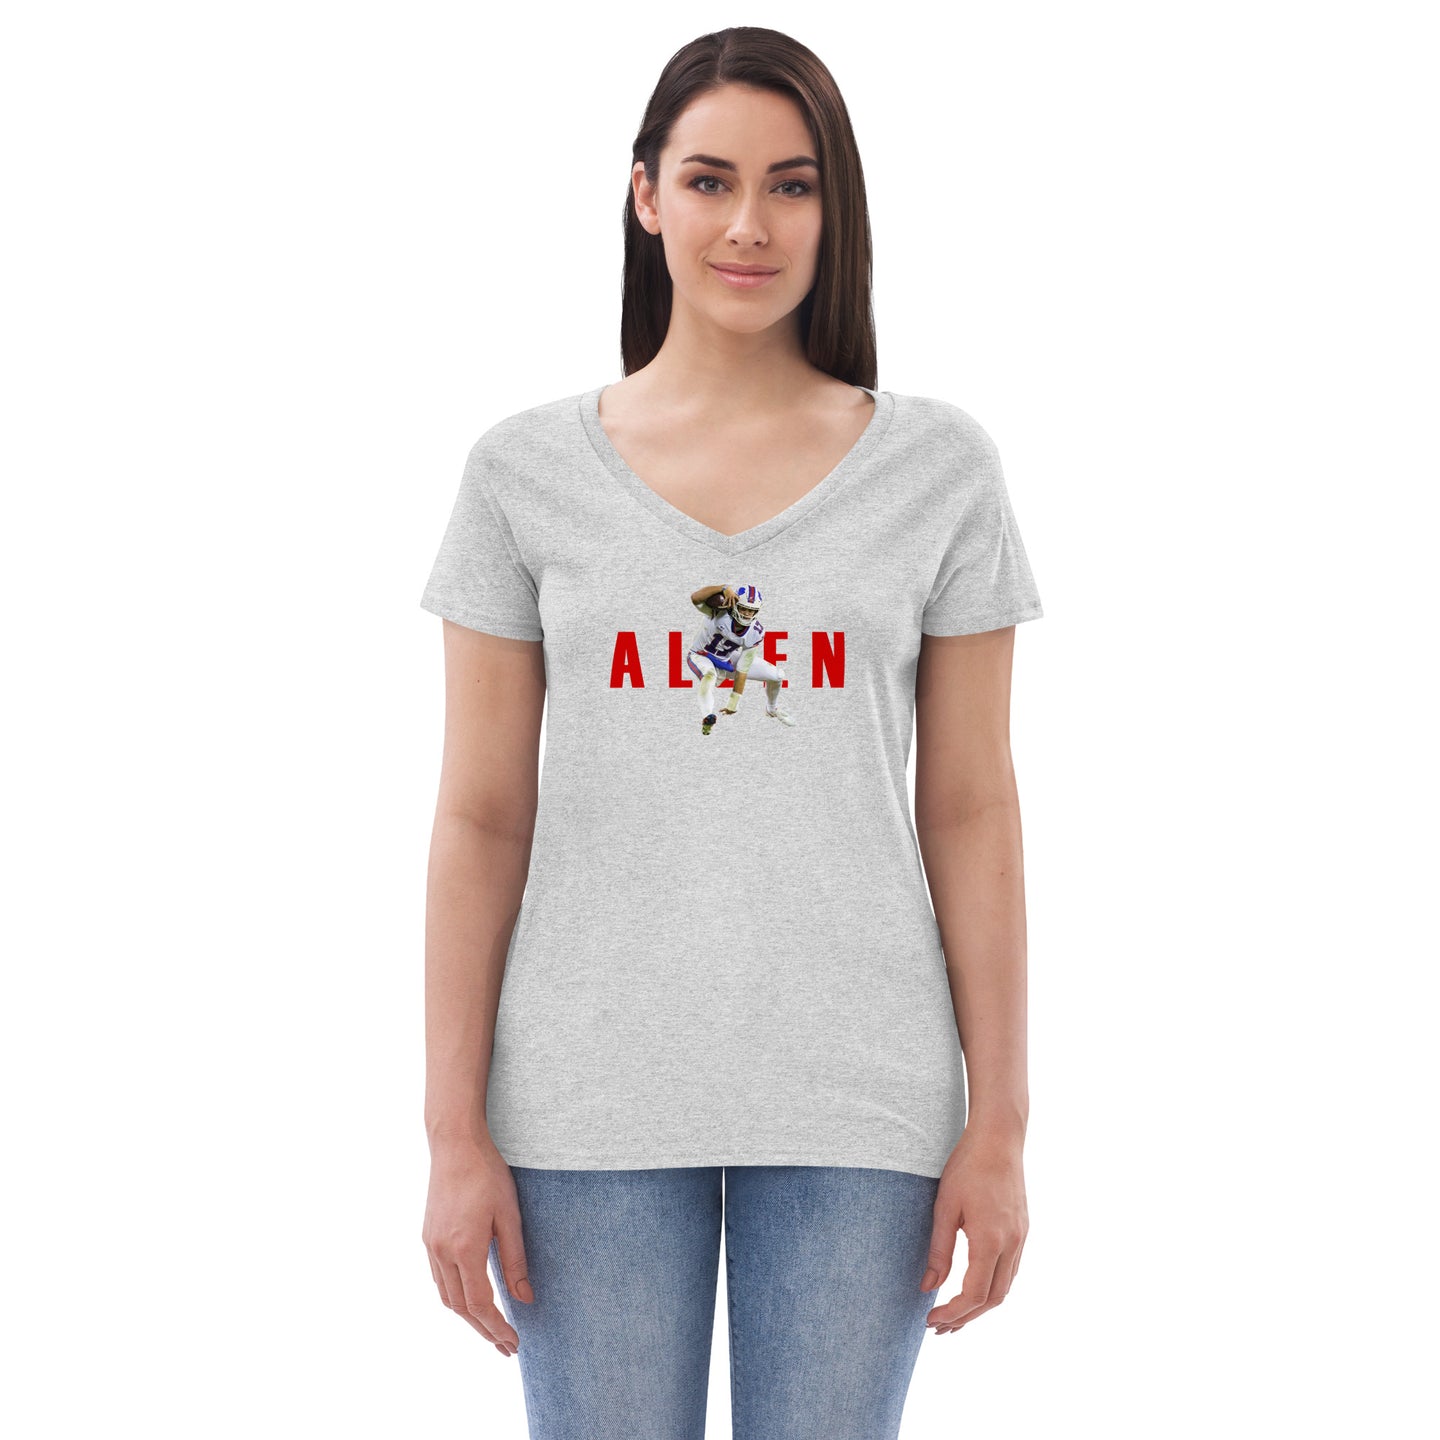 Josh Air Allen Women’s V-Neck T-shirt